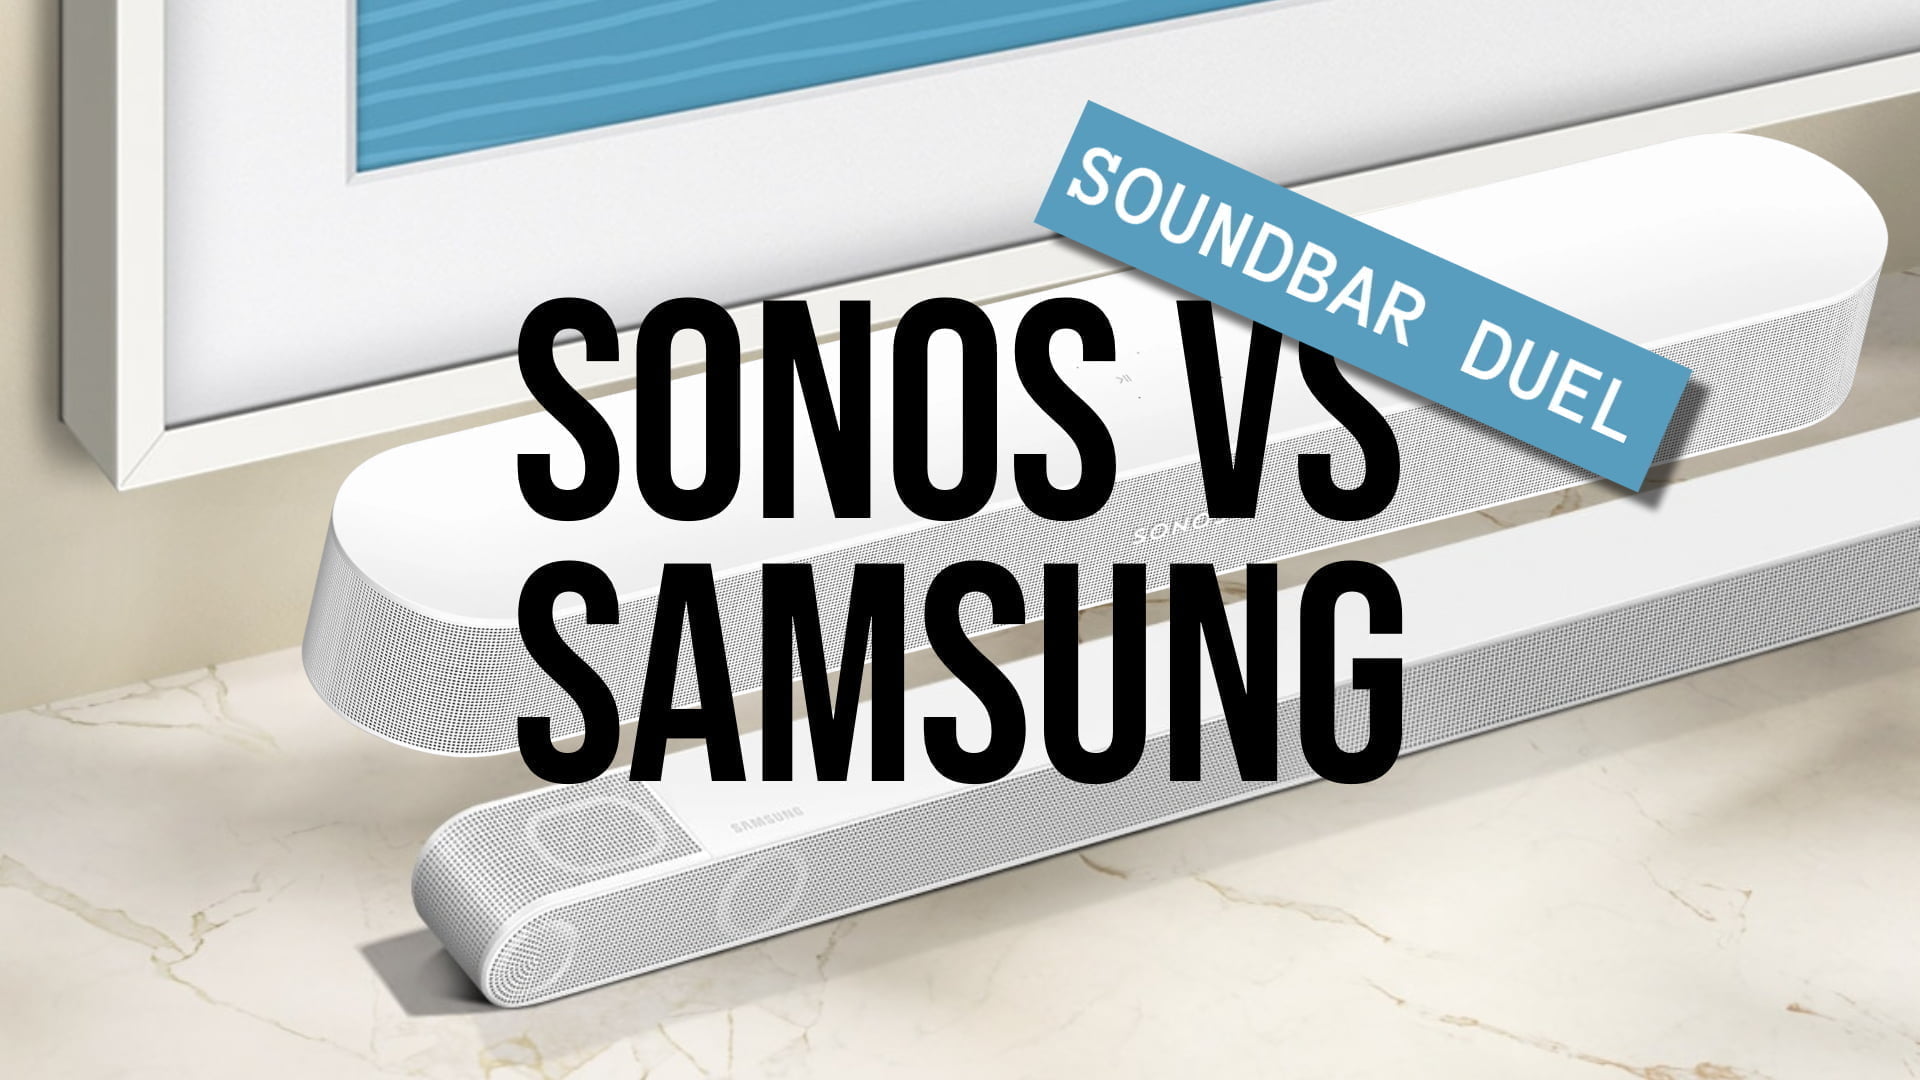 Soundbar duel: Sonos vs. MereMobil.dk